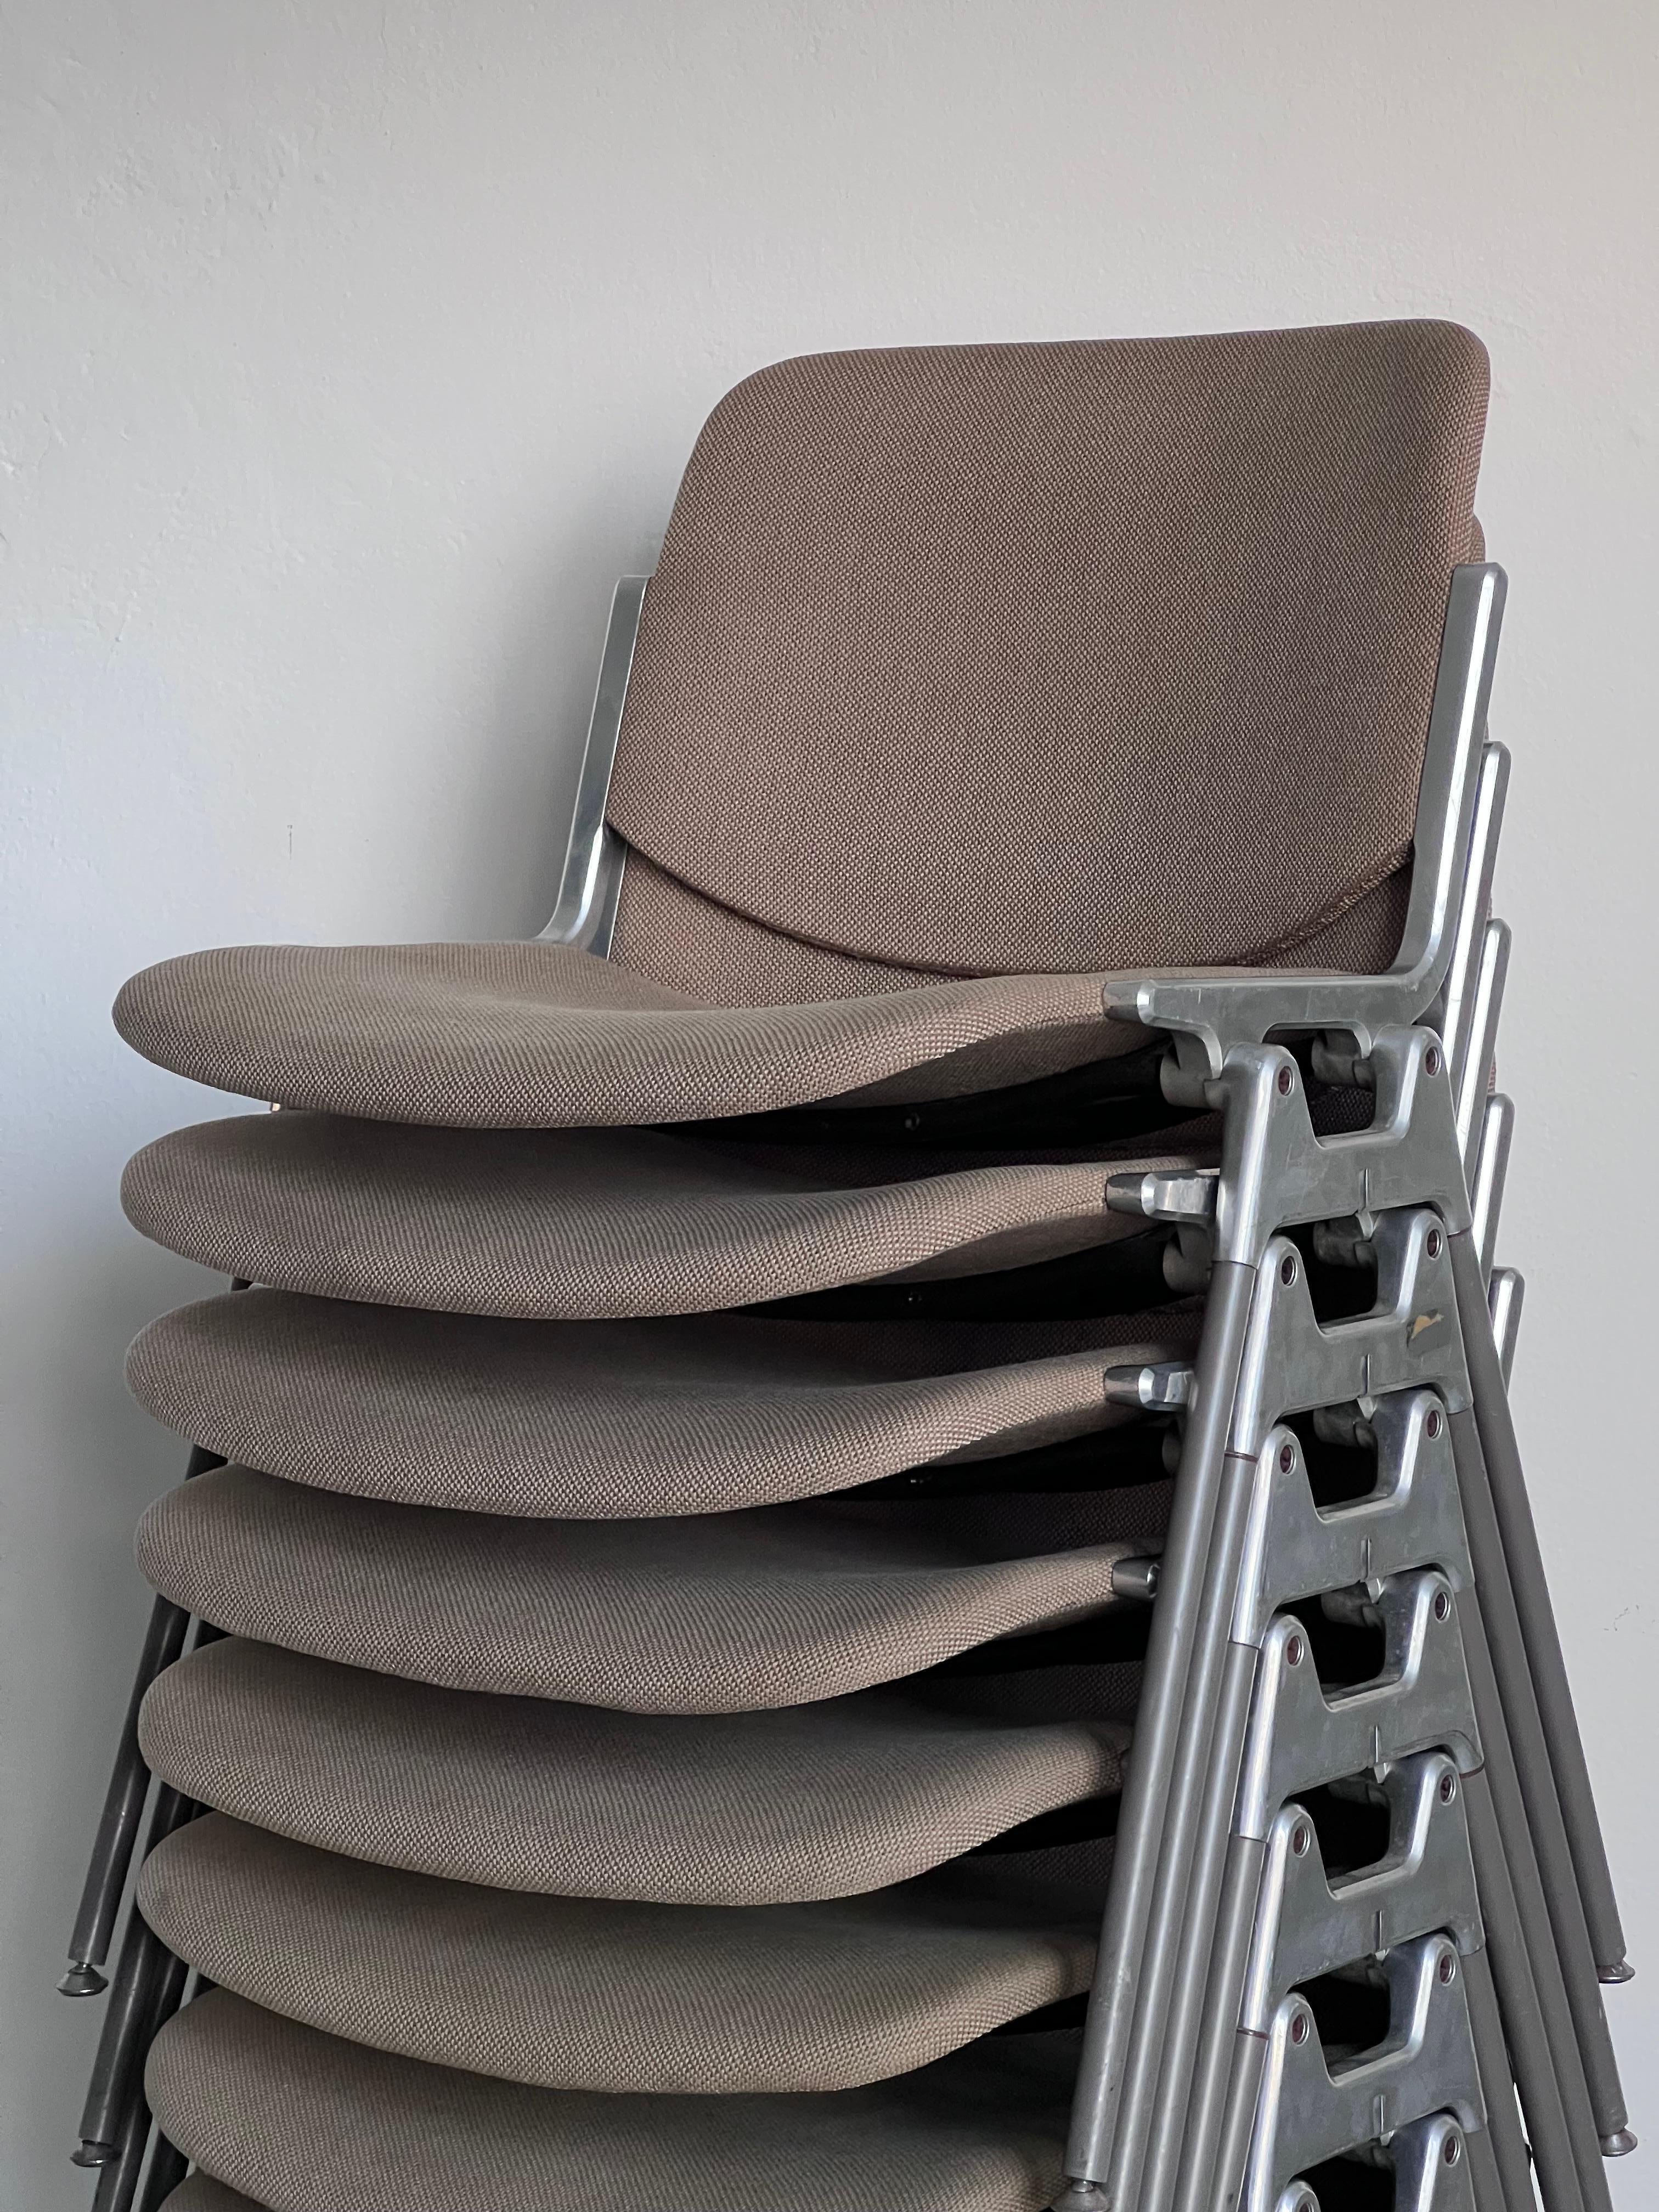 Chaises de salle à manger italiennes - 10 chaises de salle à manger - Chaises design italiennes 

Grand ensemble de dix chaises Anonima Castelli DSC106 de Giancarlo Piretti. Il est extrêmement difficile de trouver un ensemble aussi important, tout